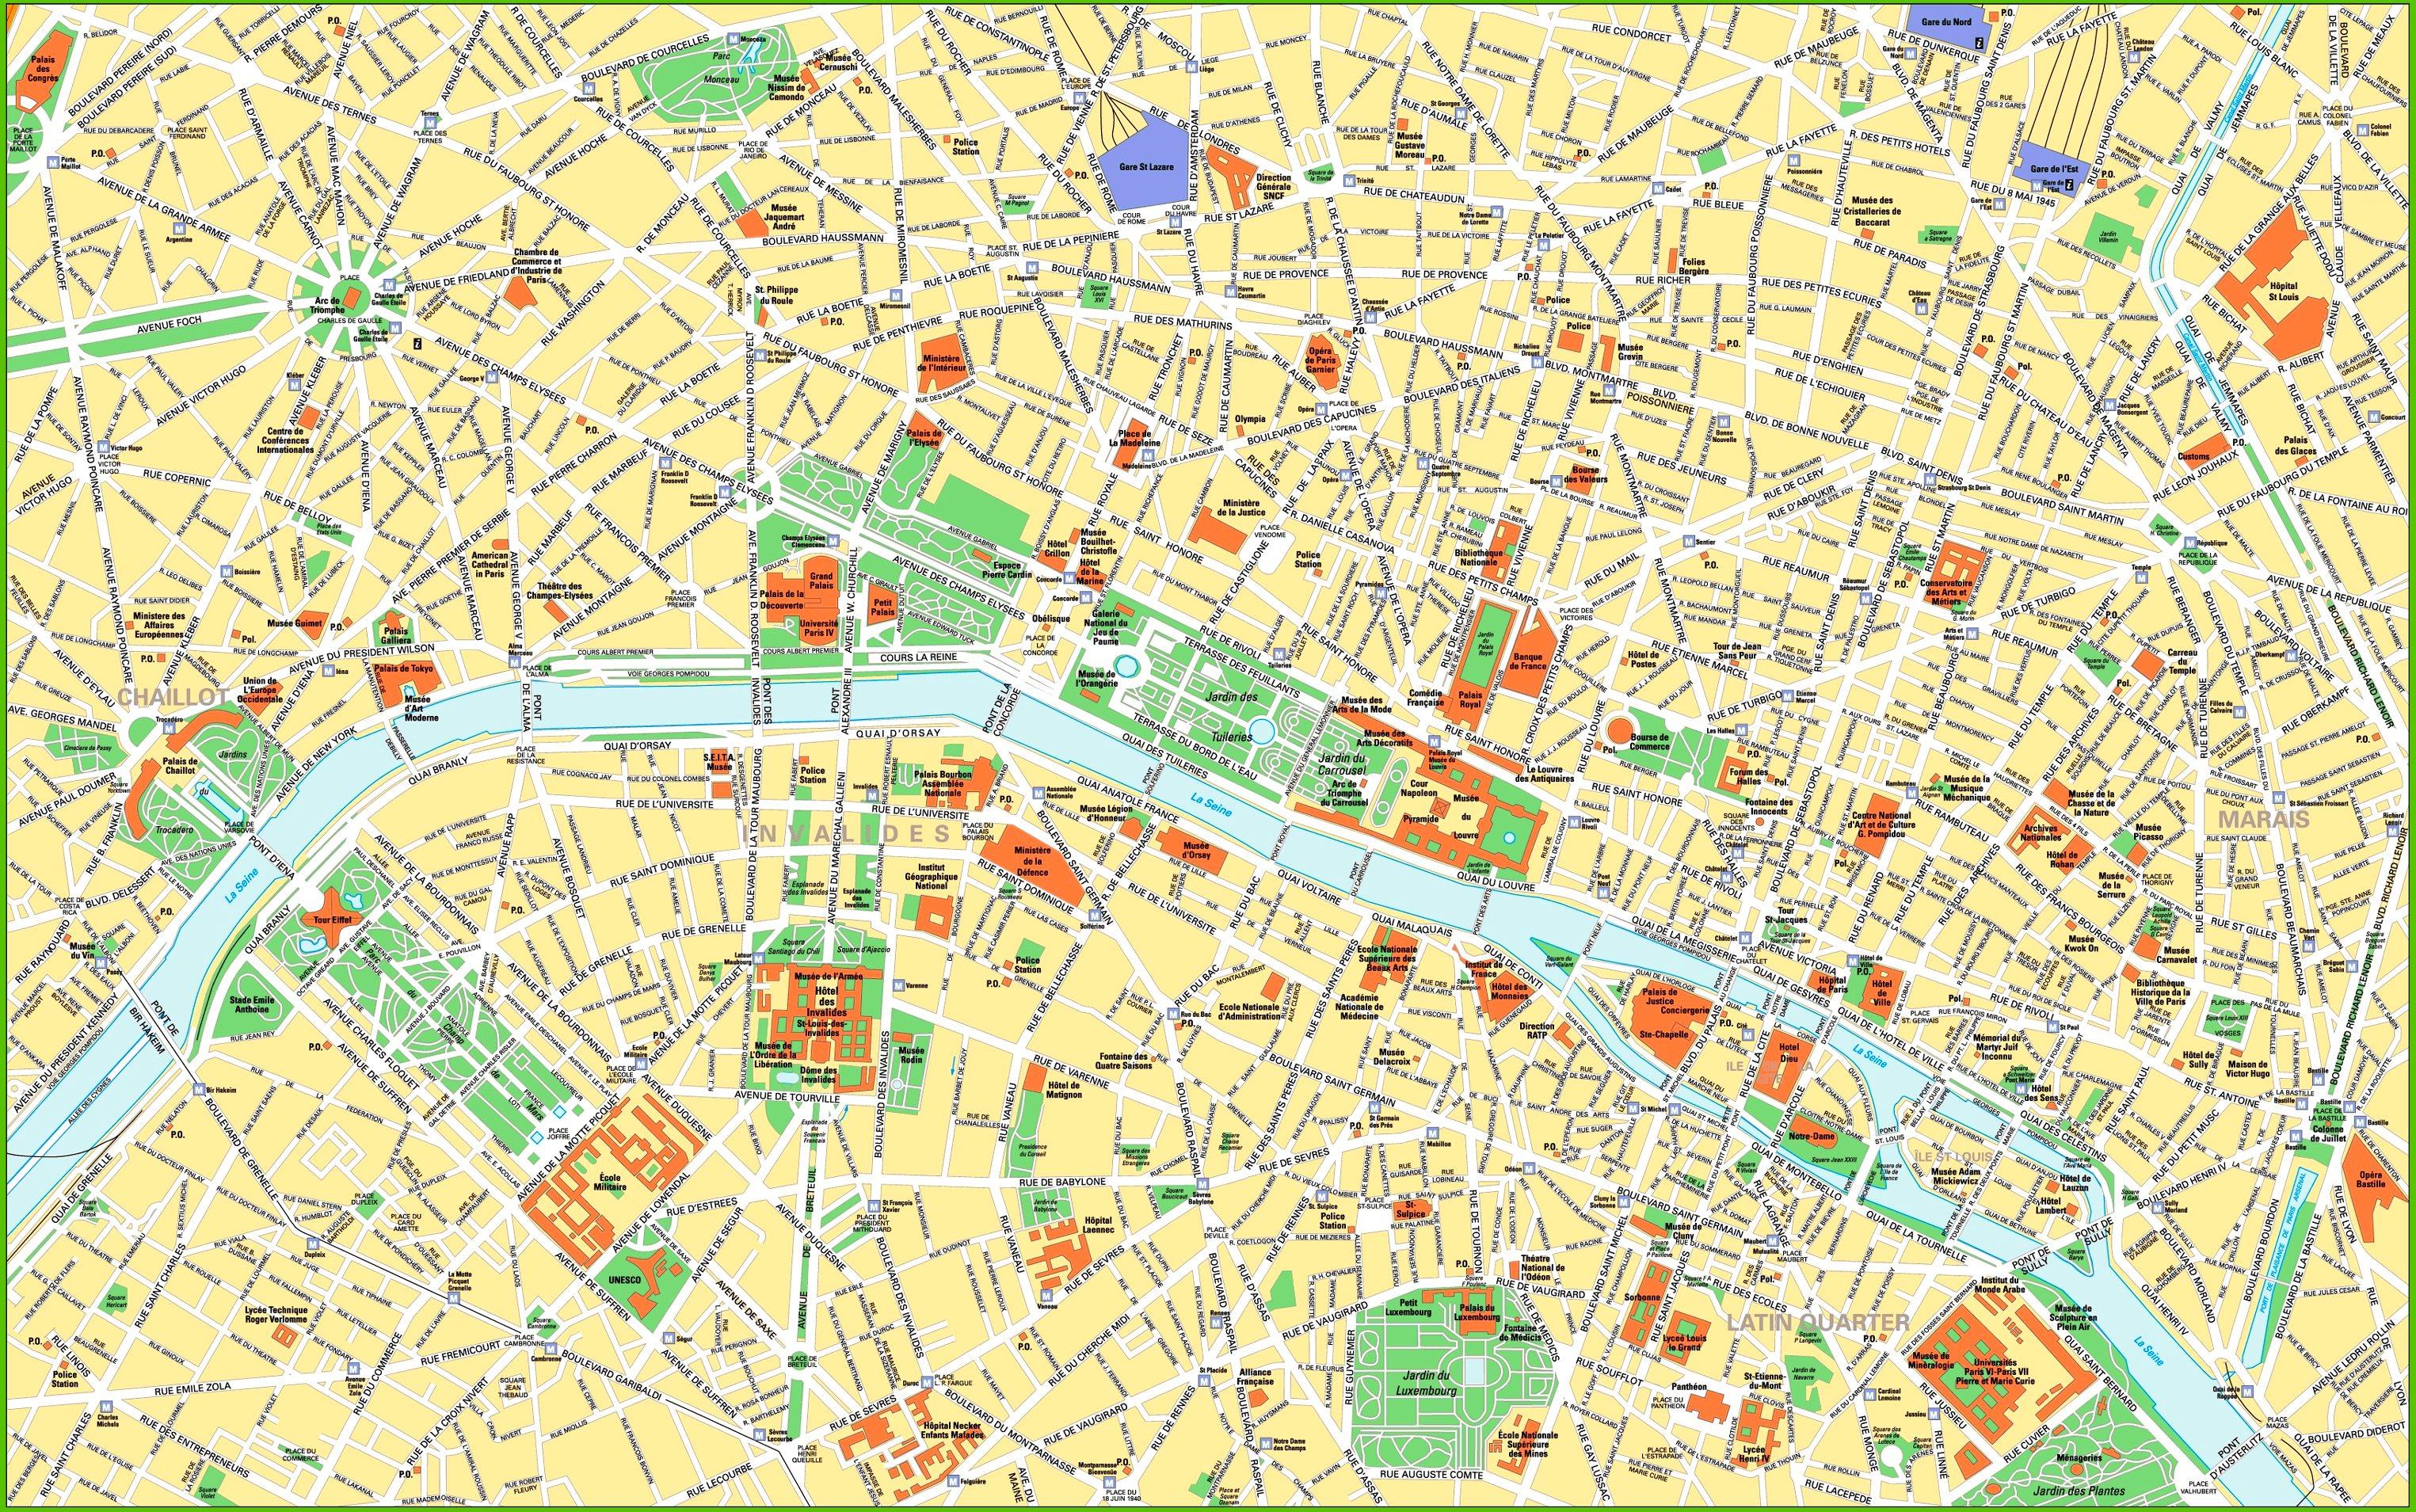 Paris city center map - Map of Paris city centre attractions (Île-de